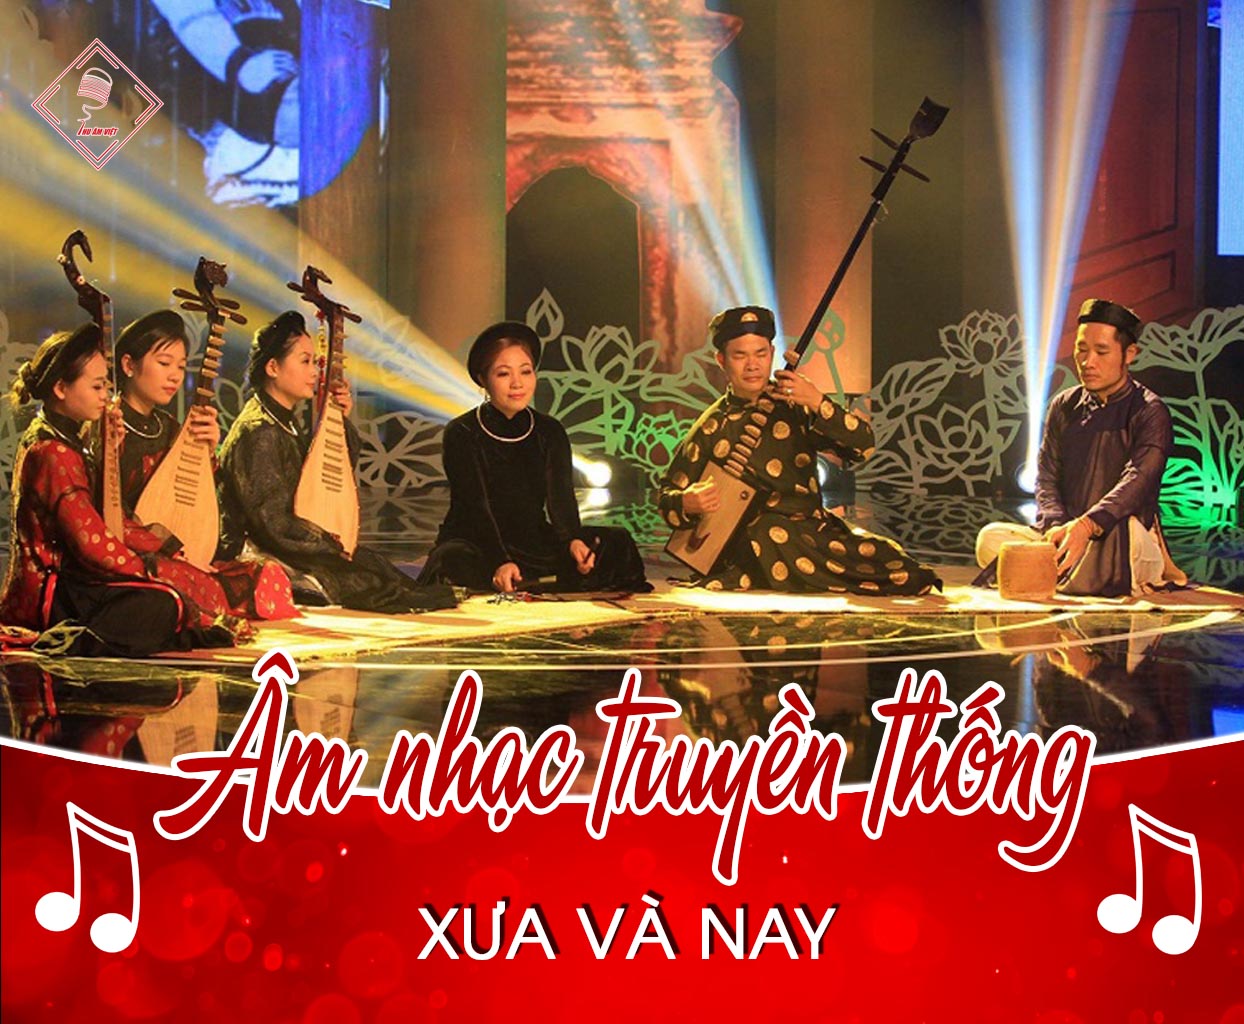 Tìm hiểu toàn cảnh âm nhạc truyền thống Việt Nam xưa và nay